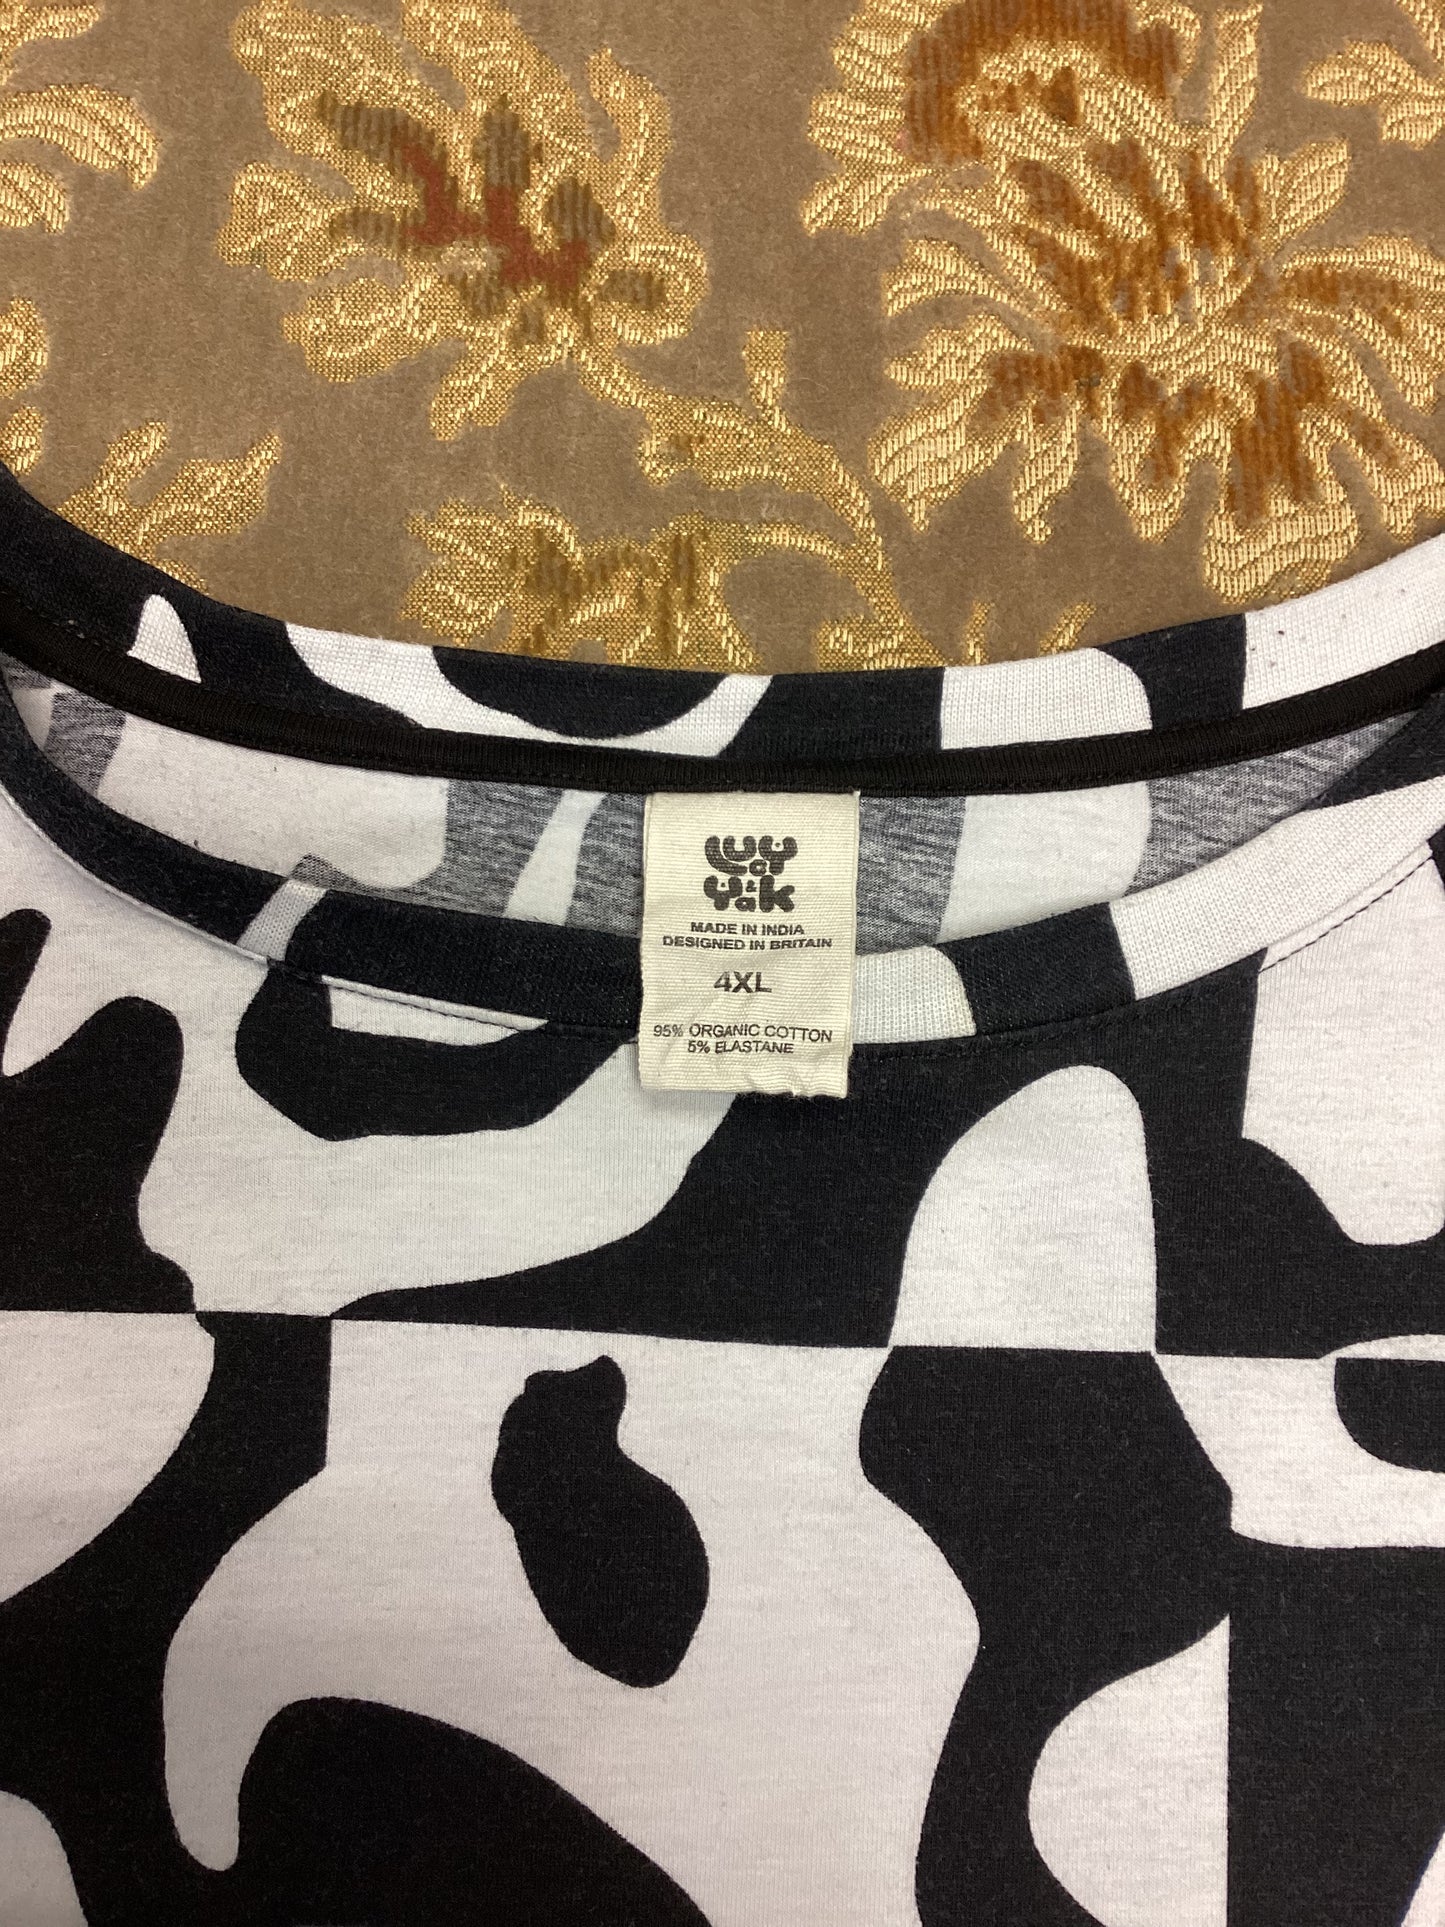 Lucy & Yak Black & White Pyjama Set Size 4XL